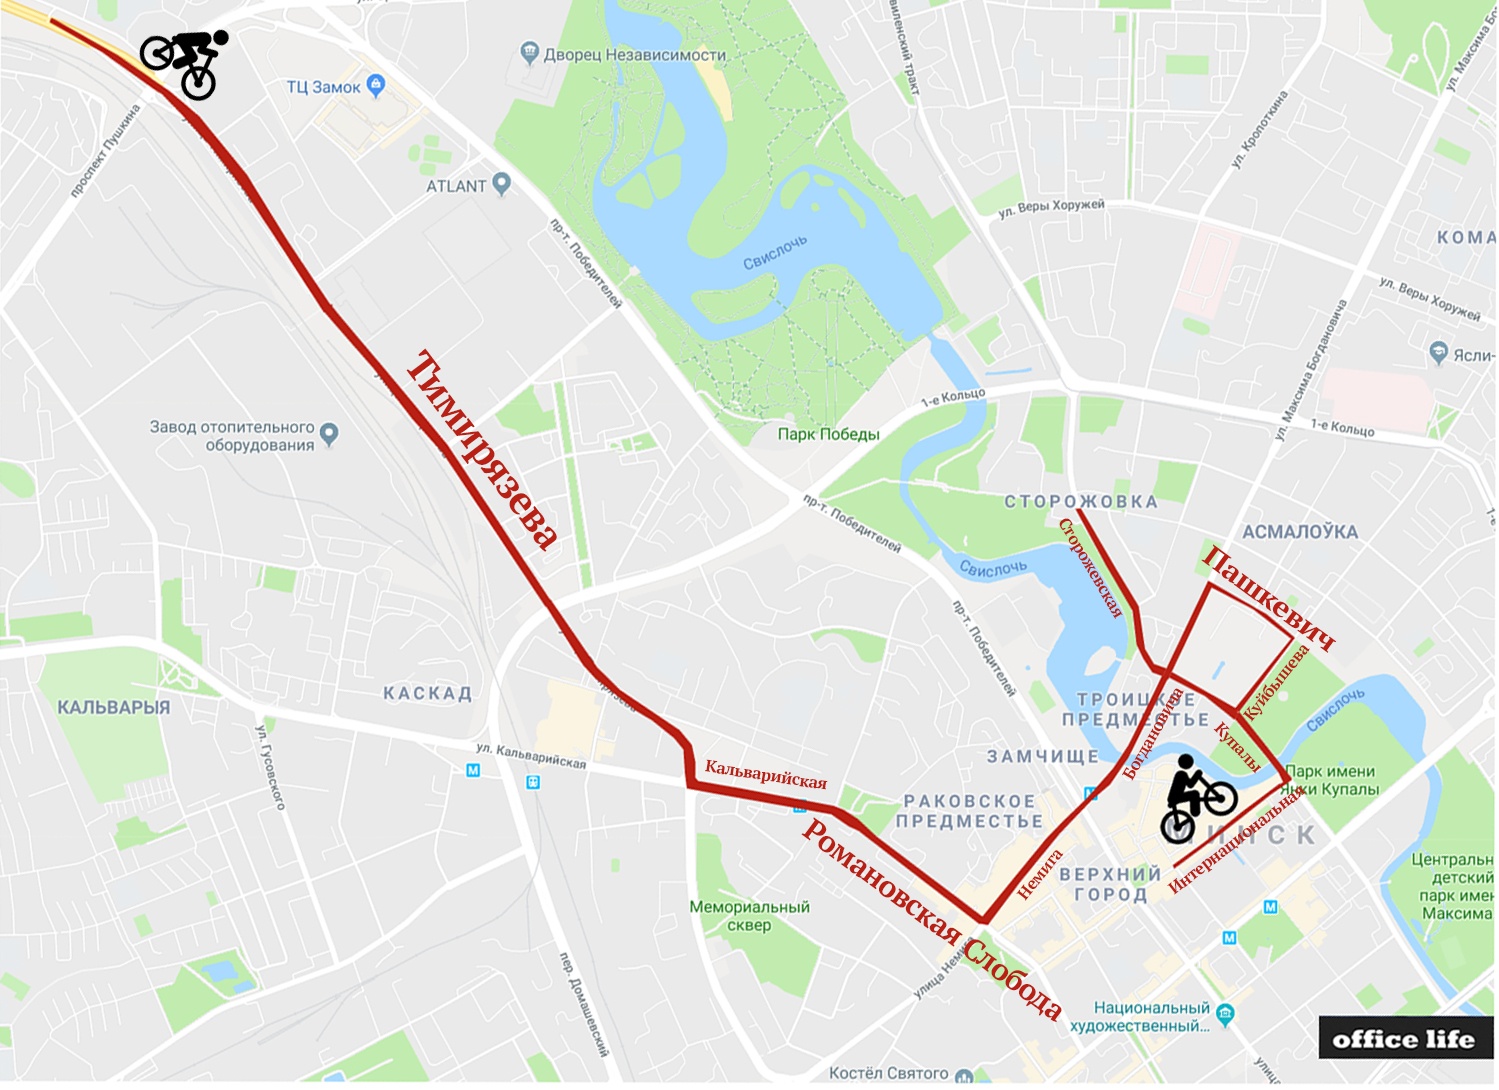 25 июня будет перекрыто часть центра Минска: индивидуальная велогонка в рамках II Европейских игр